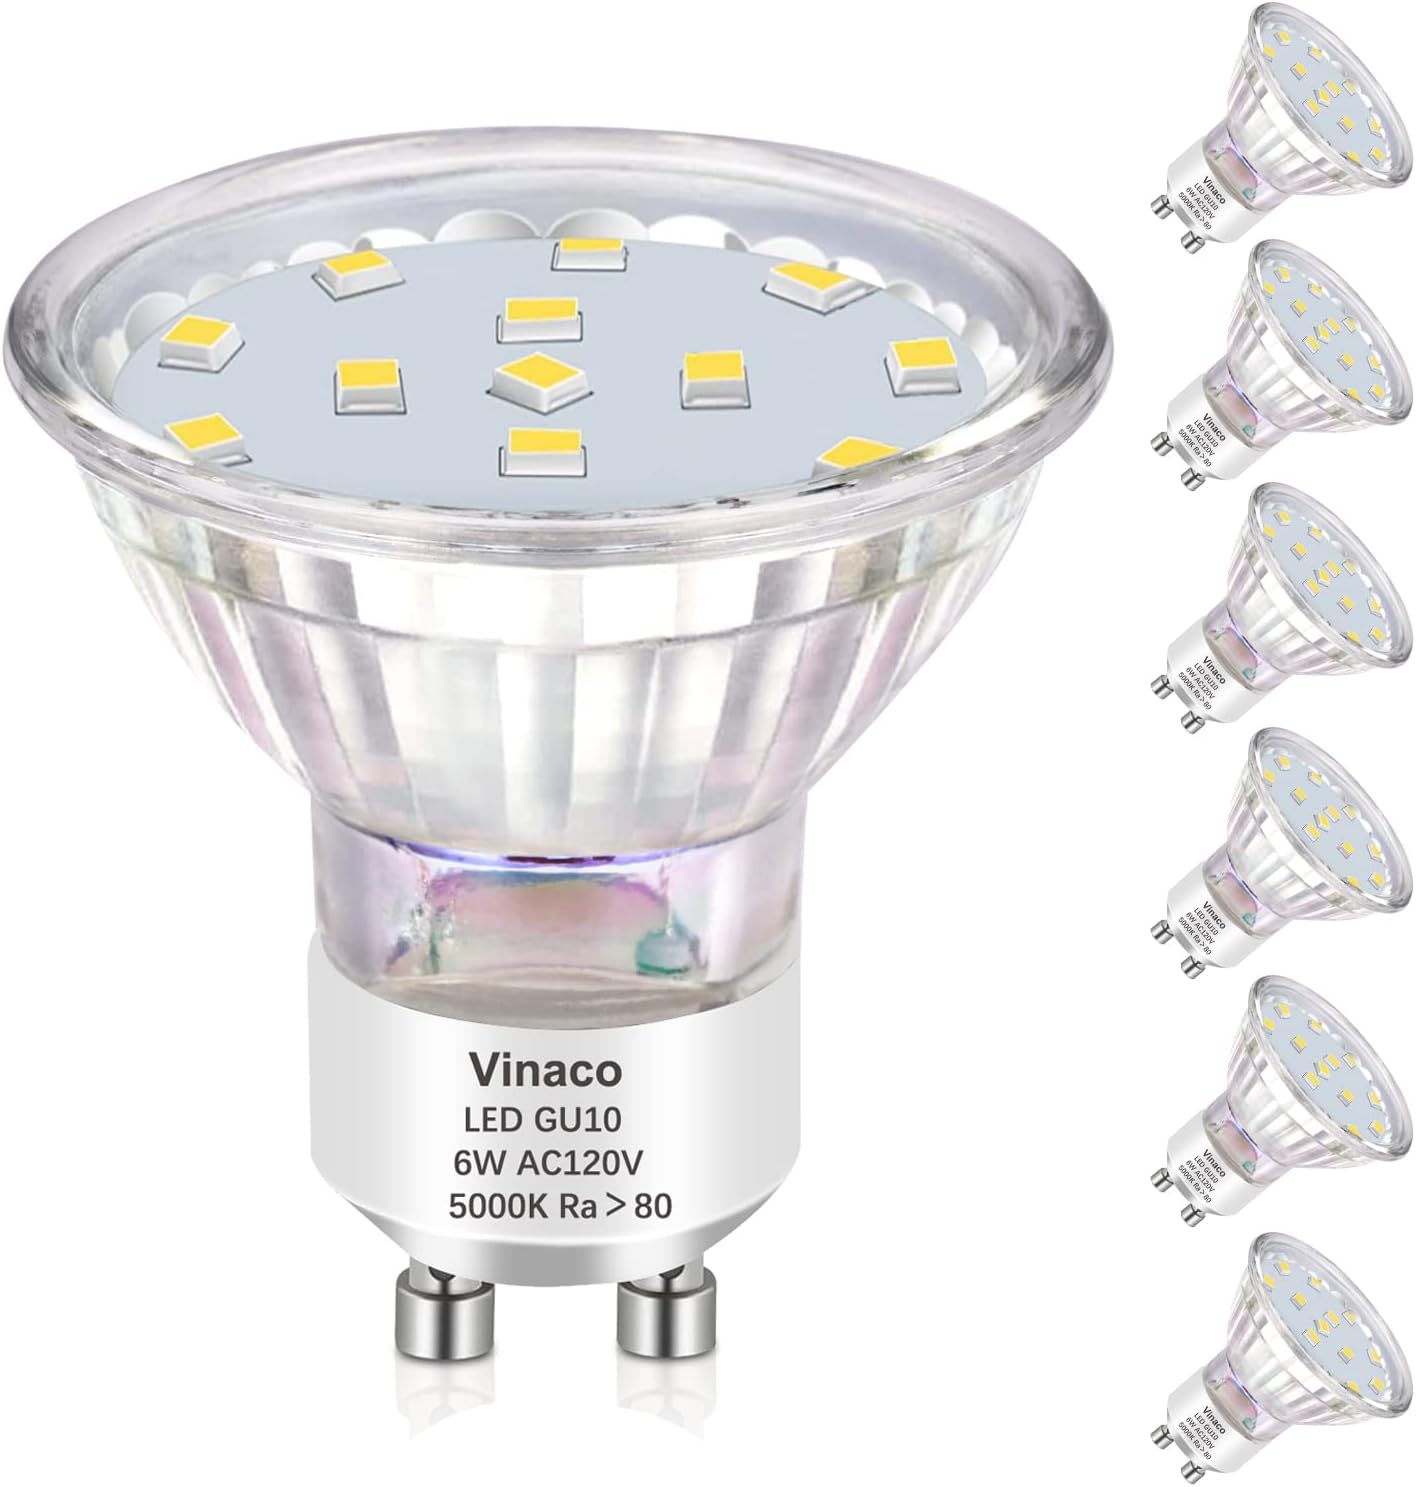 Vinaco GU10 LED Bulbs Dimmable